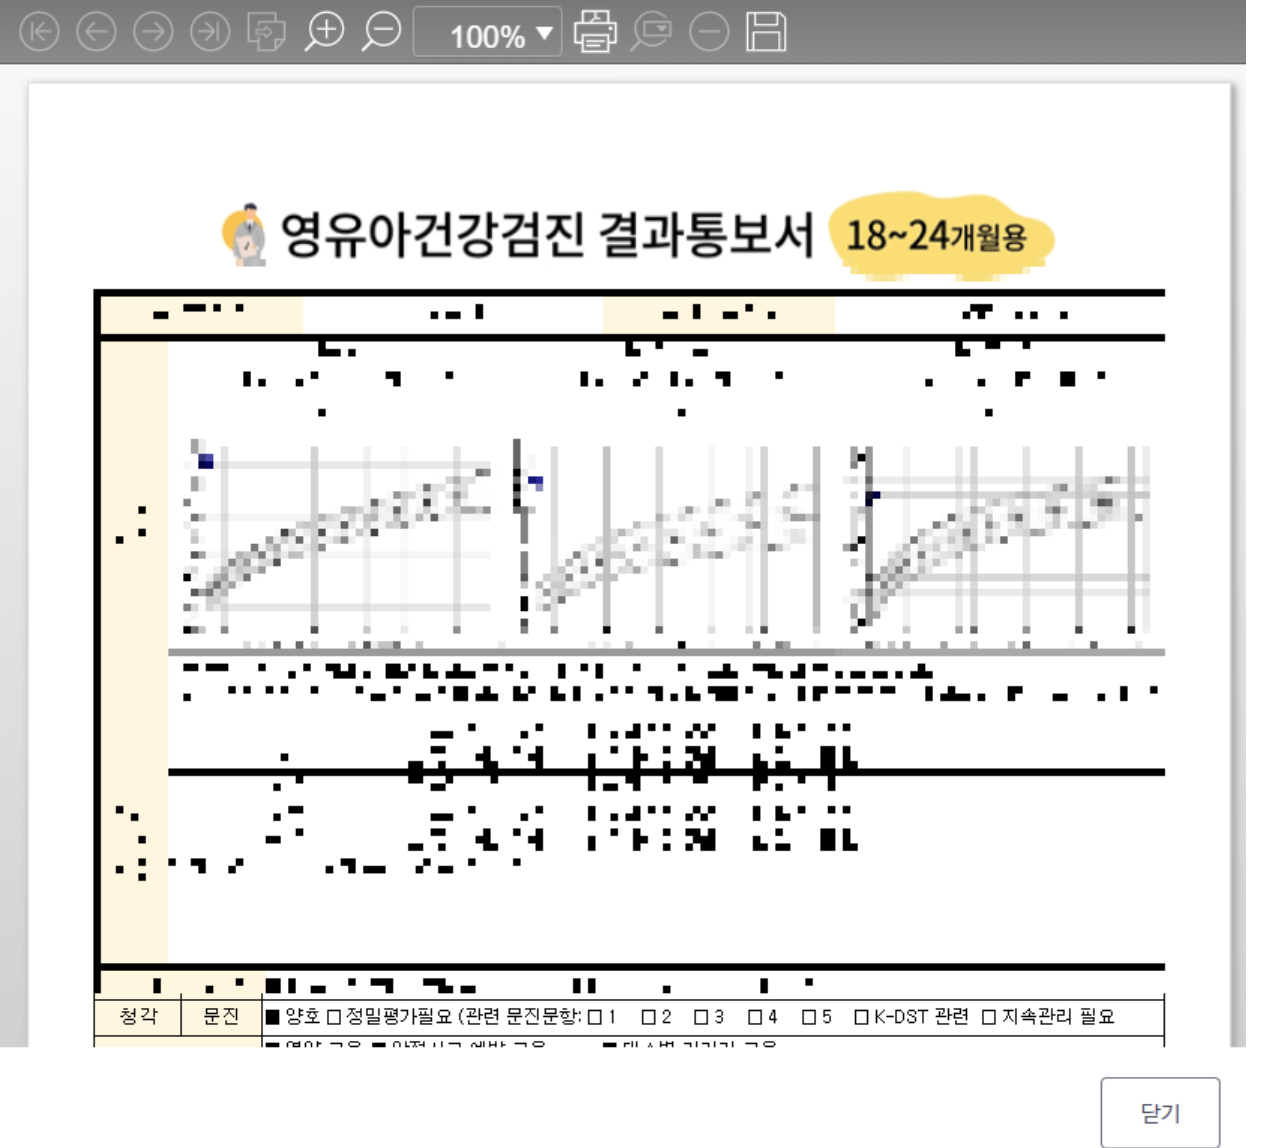 6.영유아 건강검진 통보서 출력